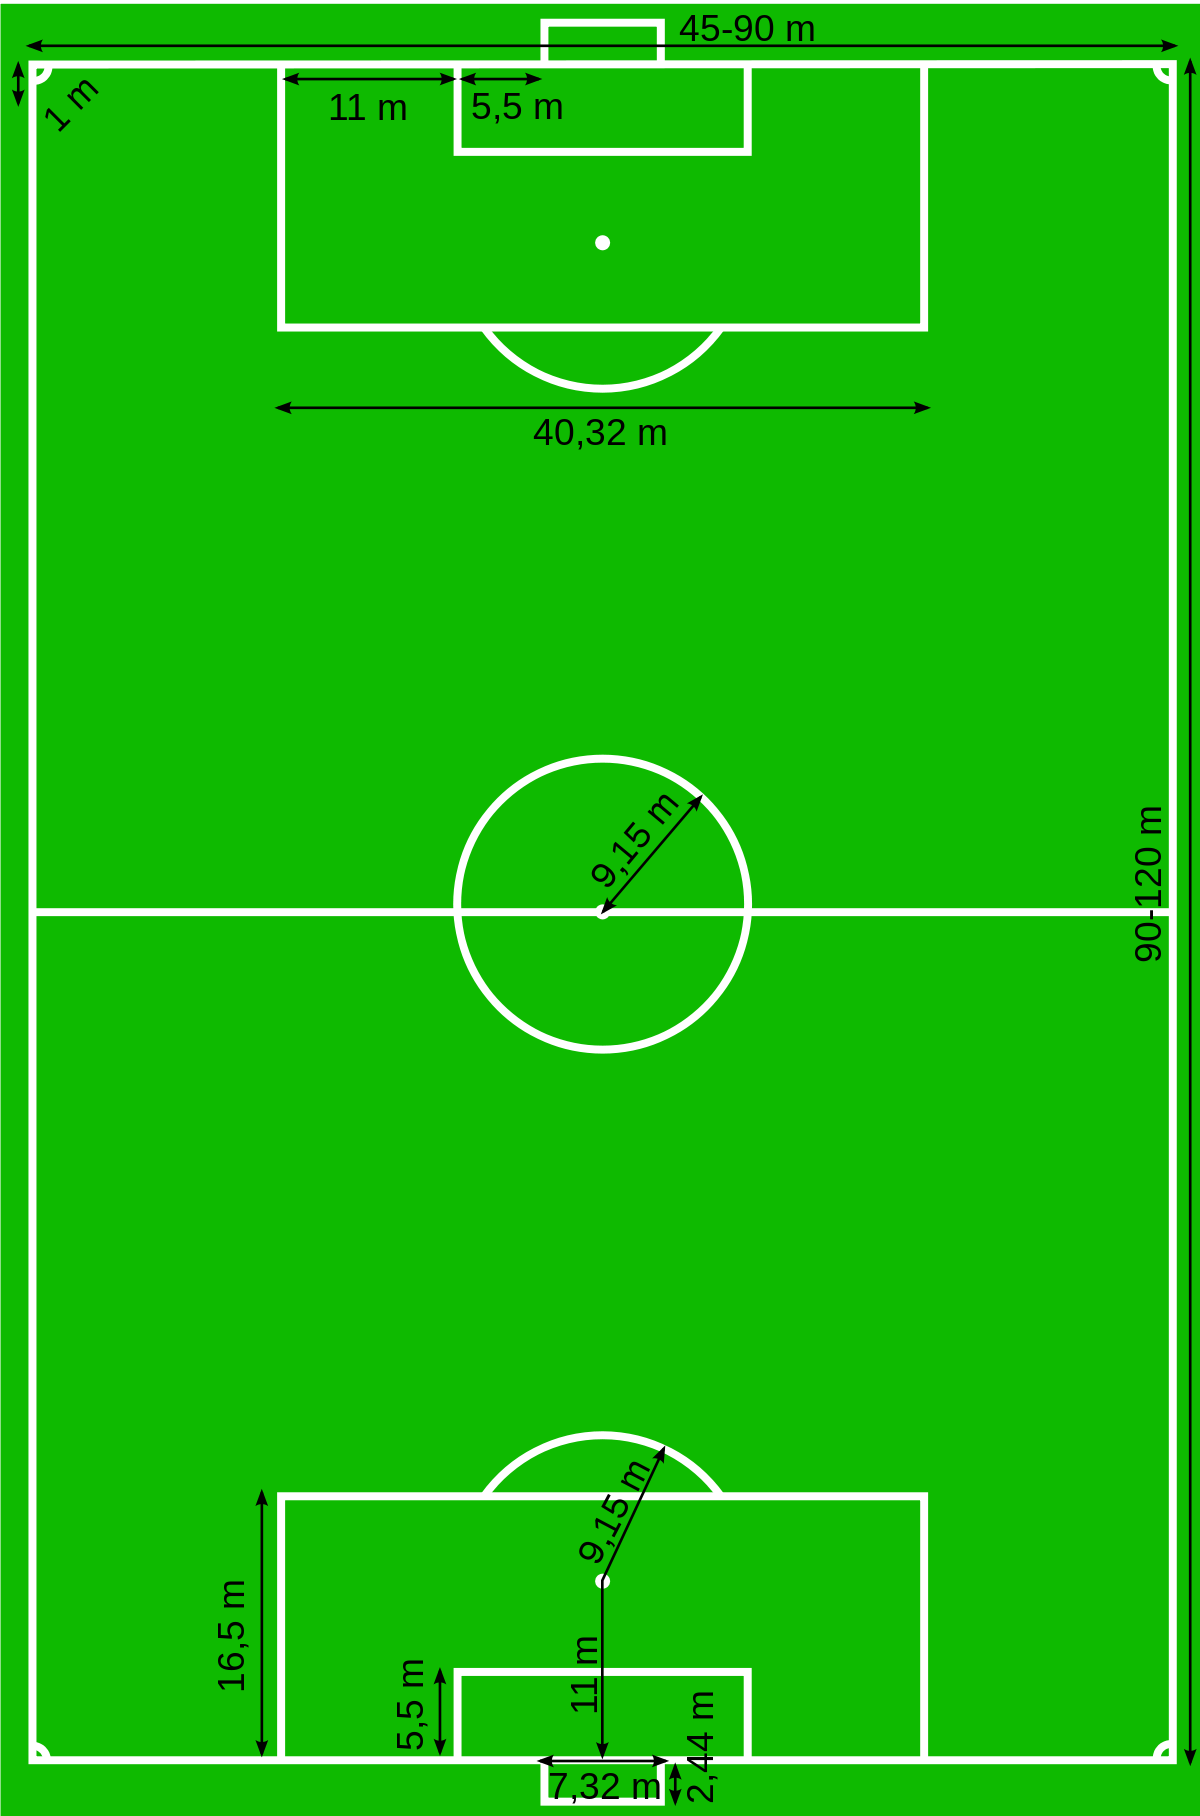 Gambarkan Lapangan Sepak Bola - KibrisPDR